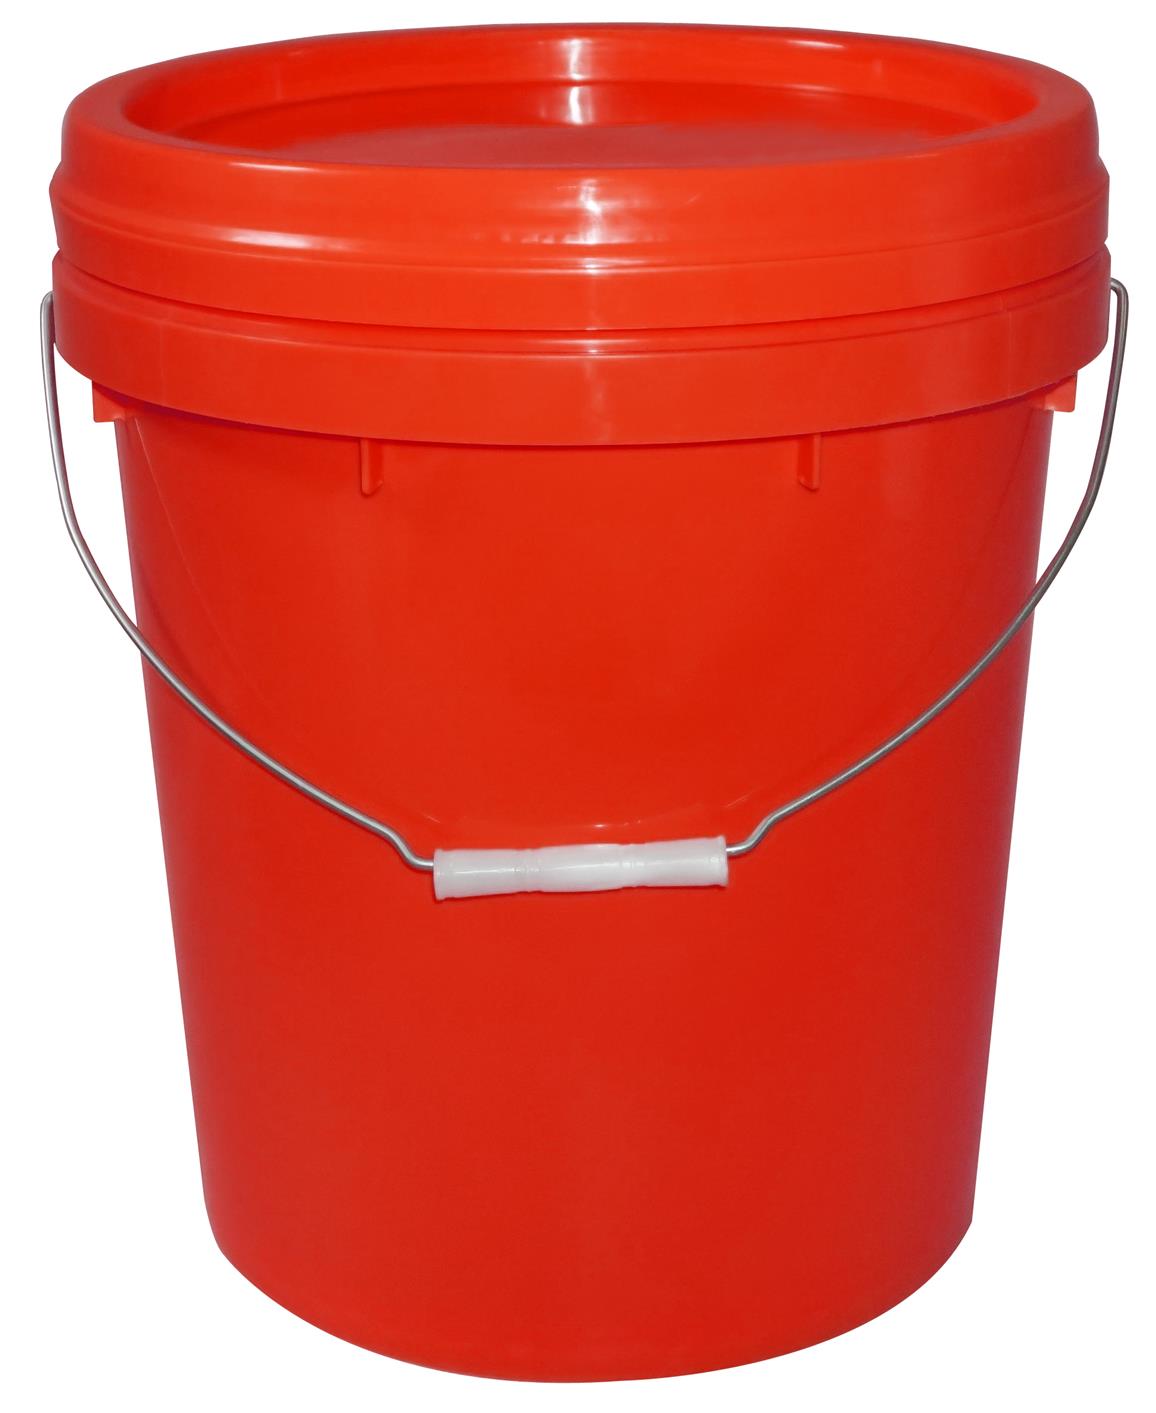 水性油漆桶注塑机新型涂料桶生产机器